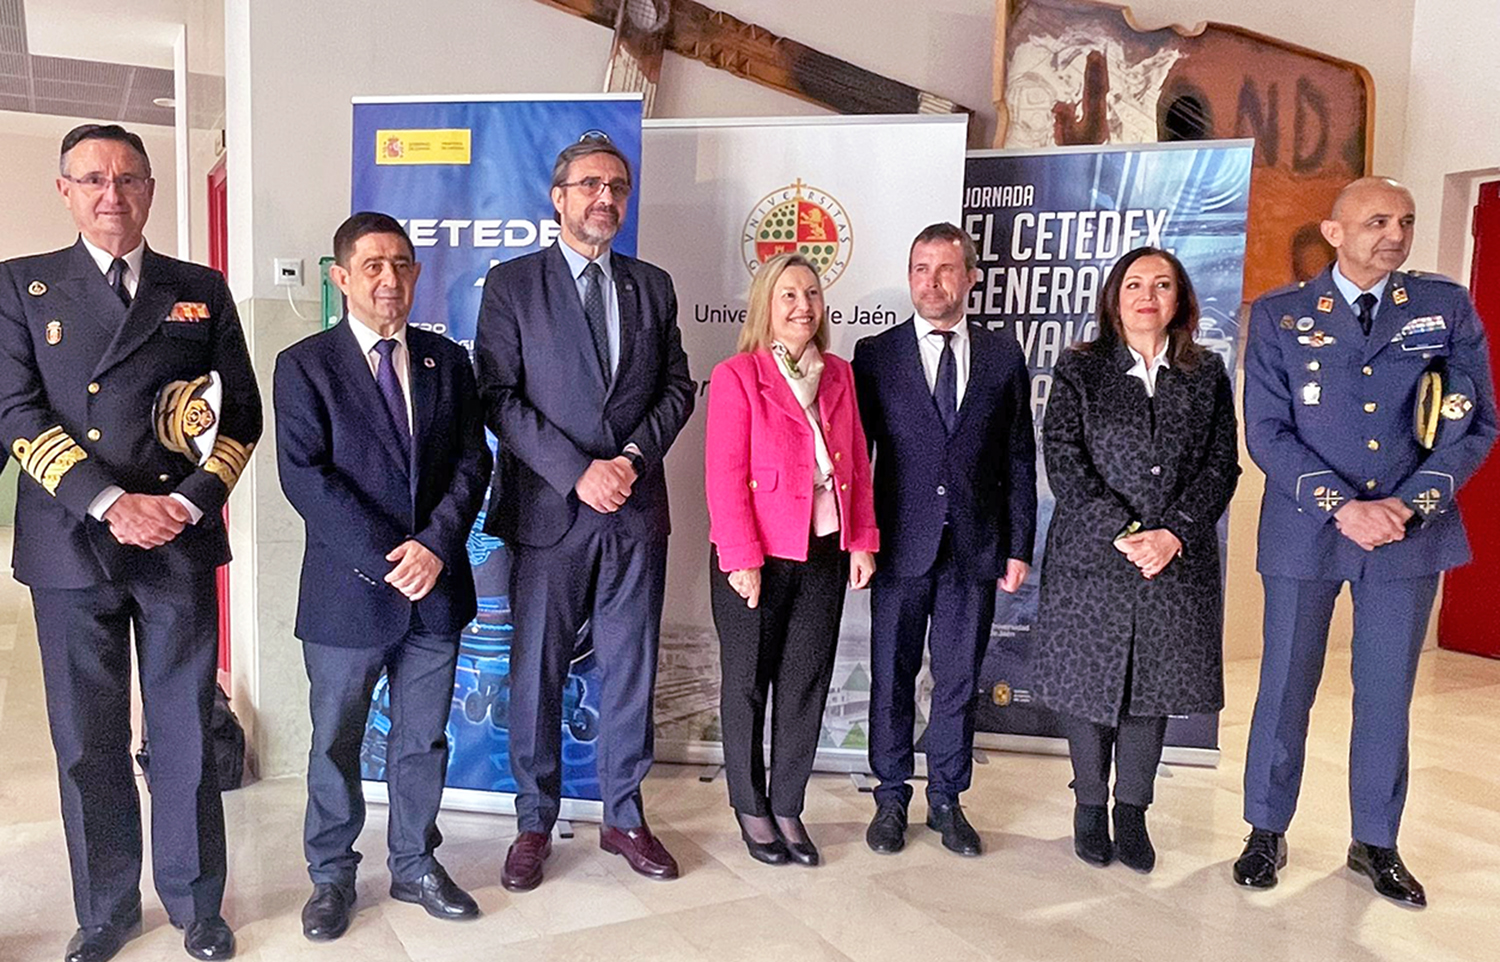 El alcalde de Jaén pide unidad a la sociedad civil para aprovechar las oportunidades que generará la puesta en marcha del CETEDEX